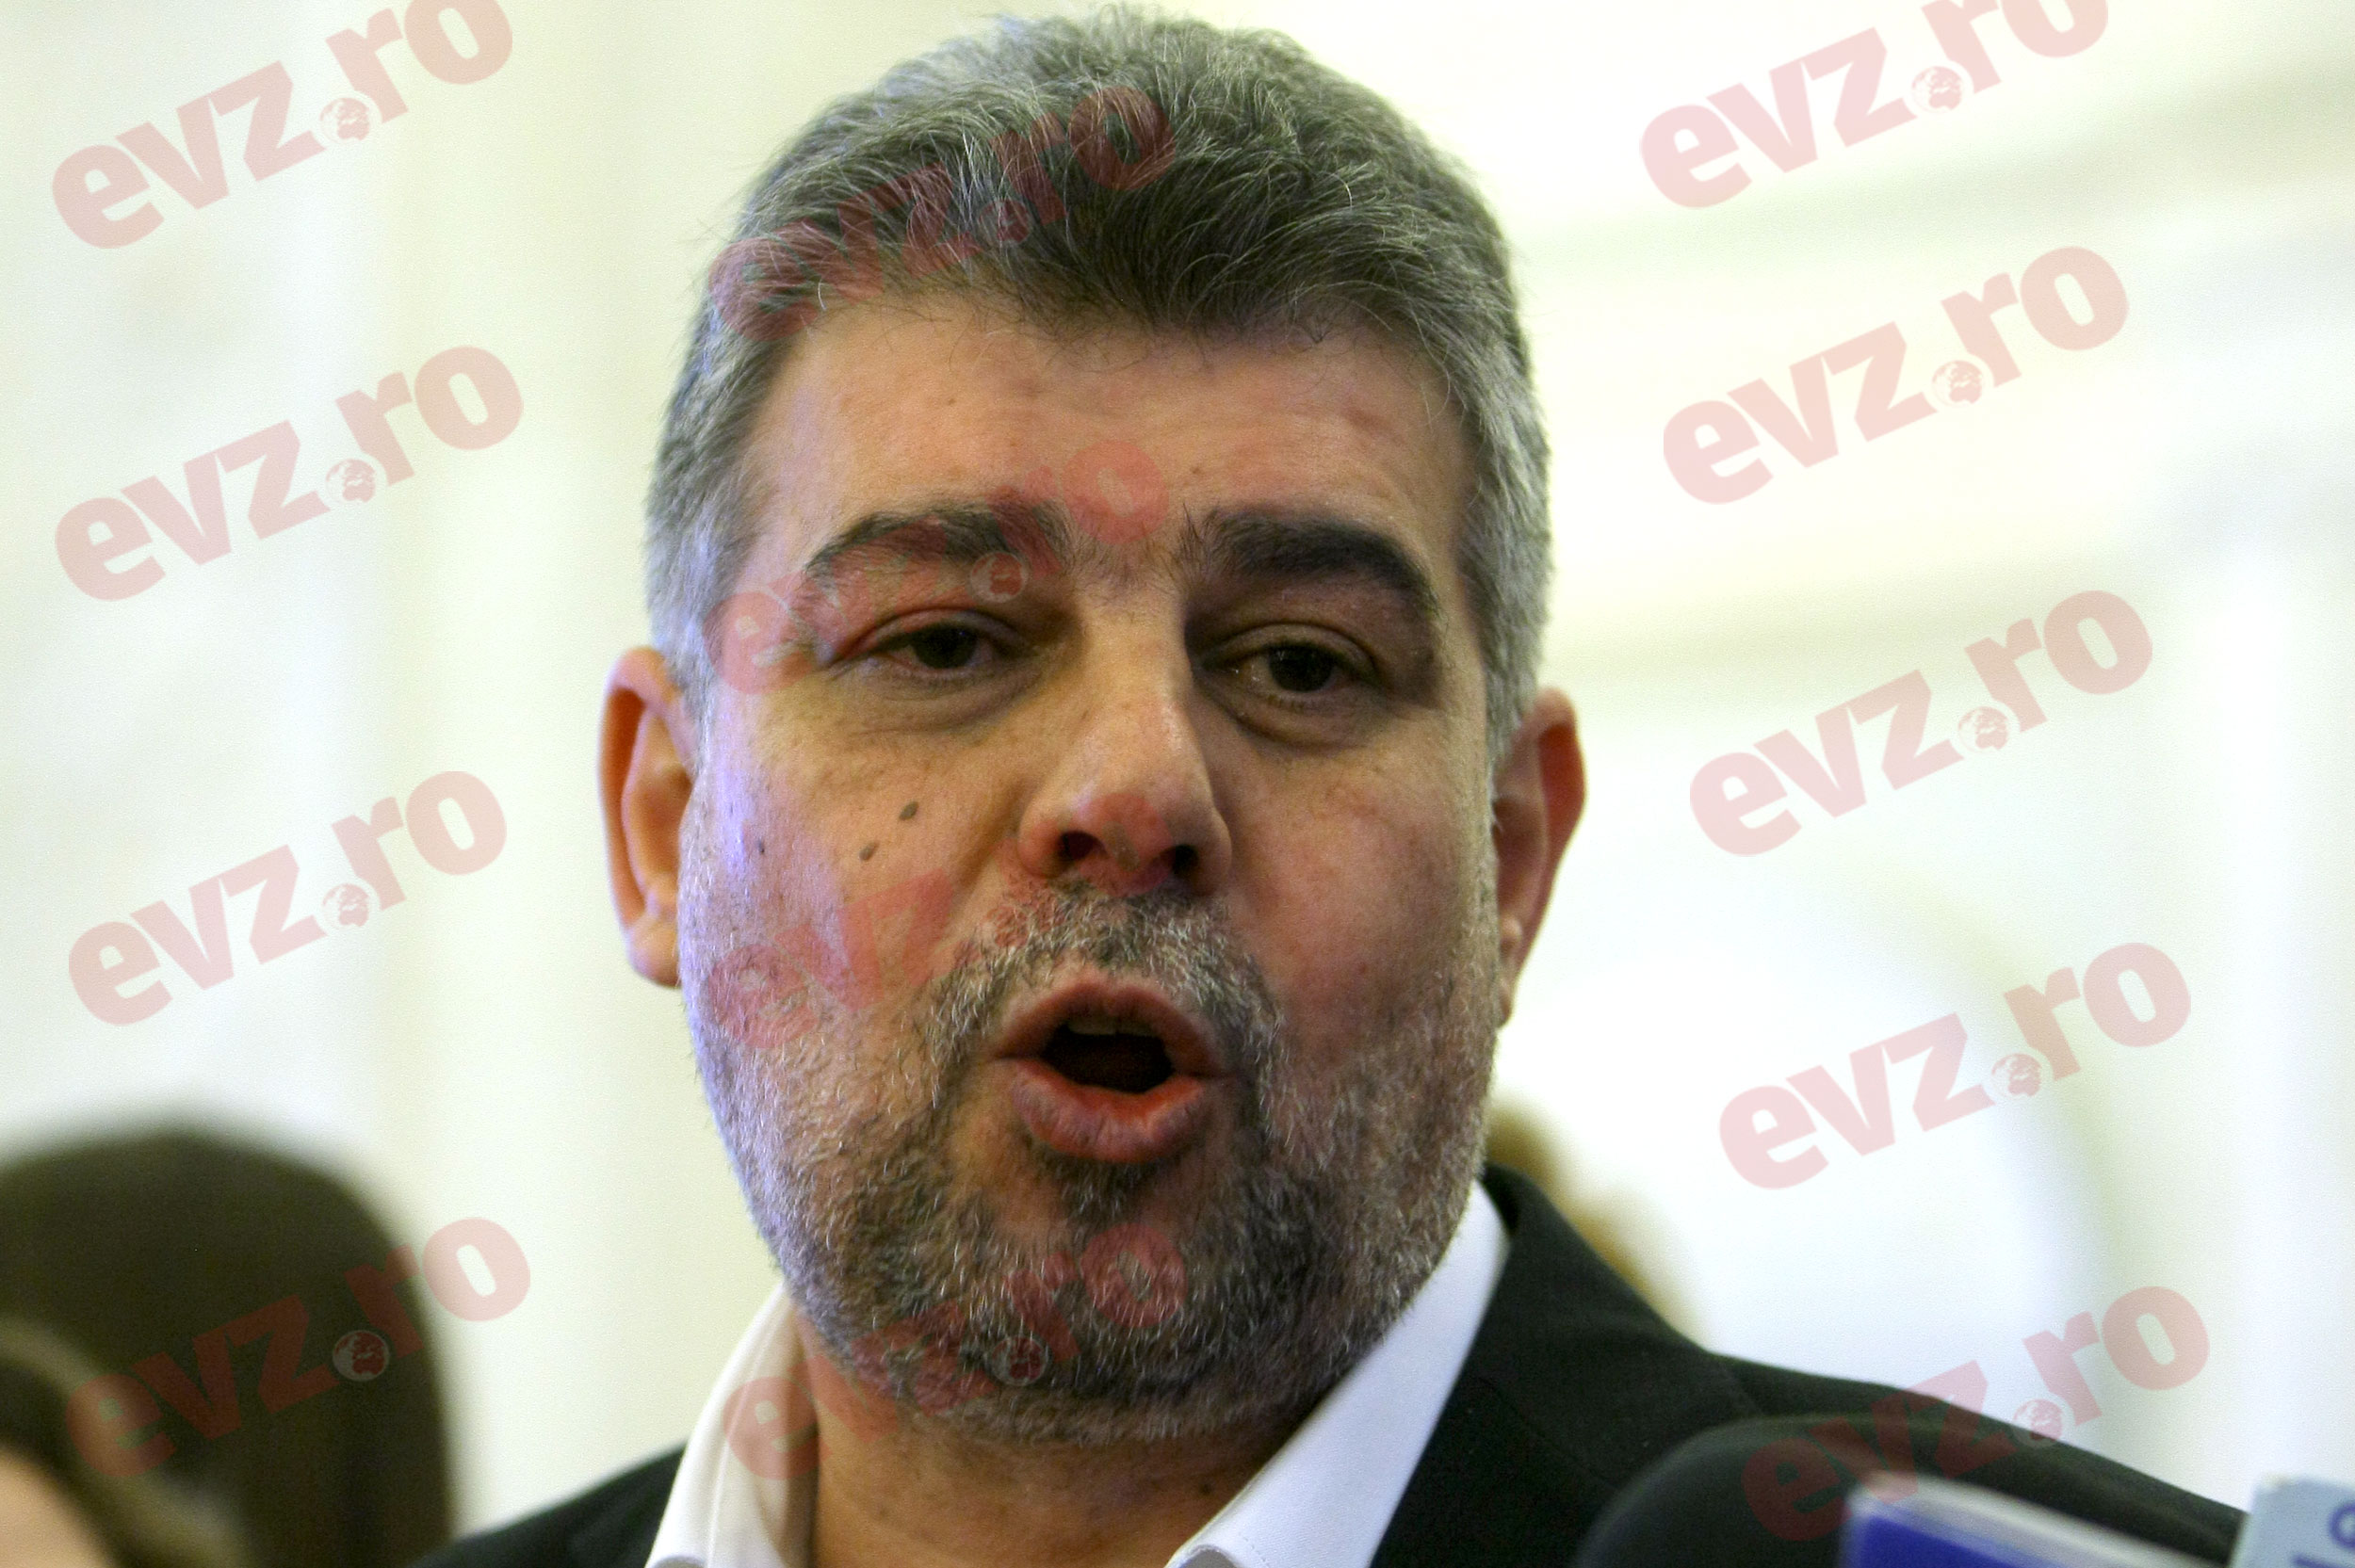 Marcel Ciolacu aruncă bomba înainte de alegeri! Plângere penală împotriva premierului Orban